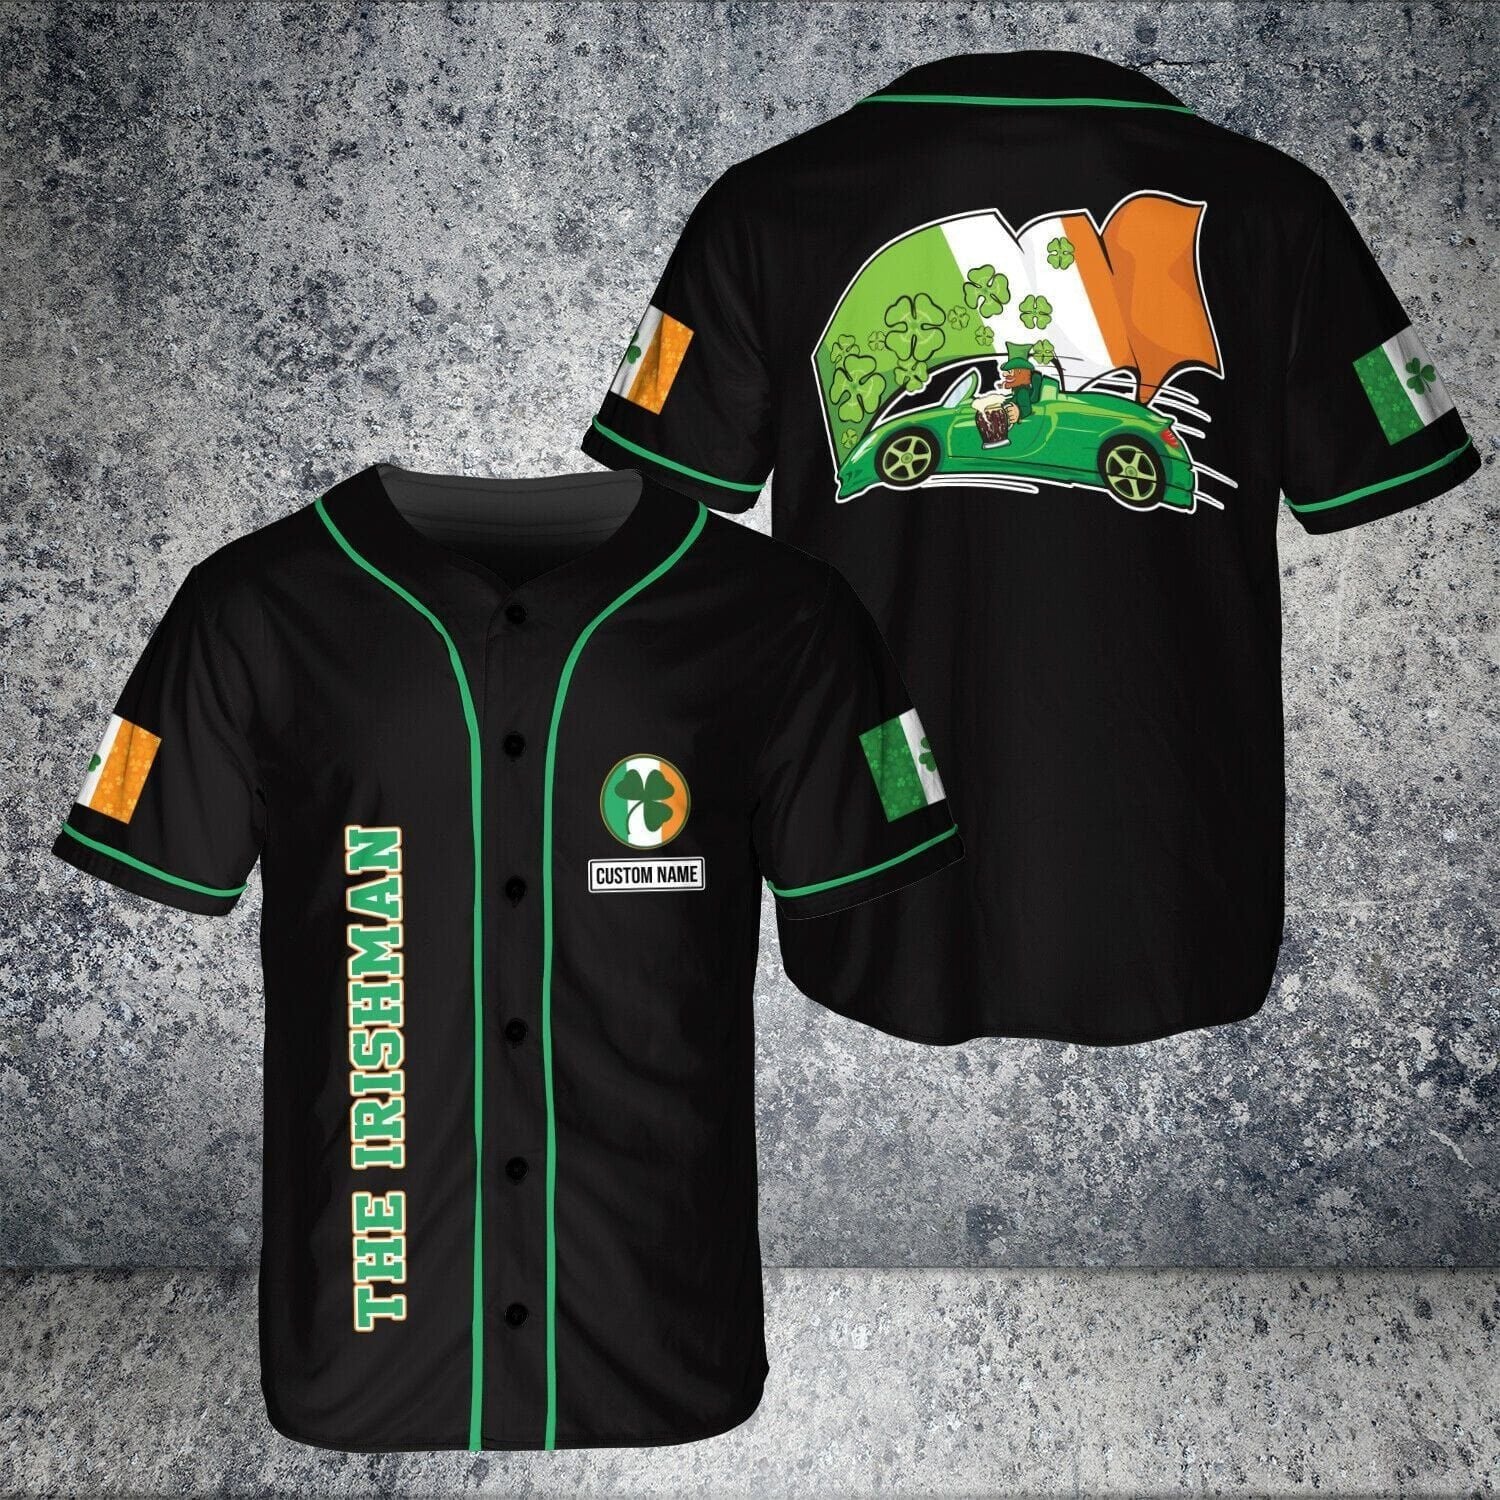 The Irishman Personalized Baseball Jersey/ Patrick Day Shirt